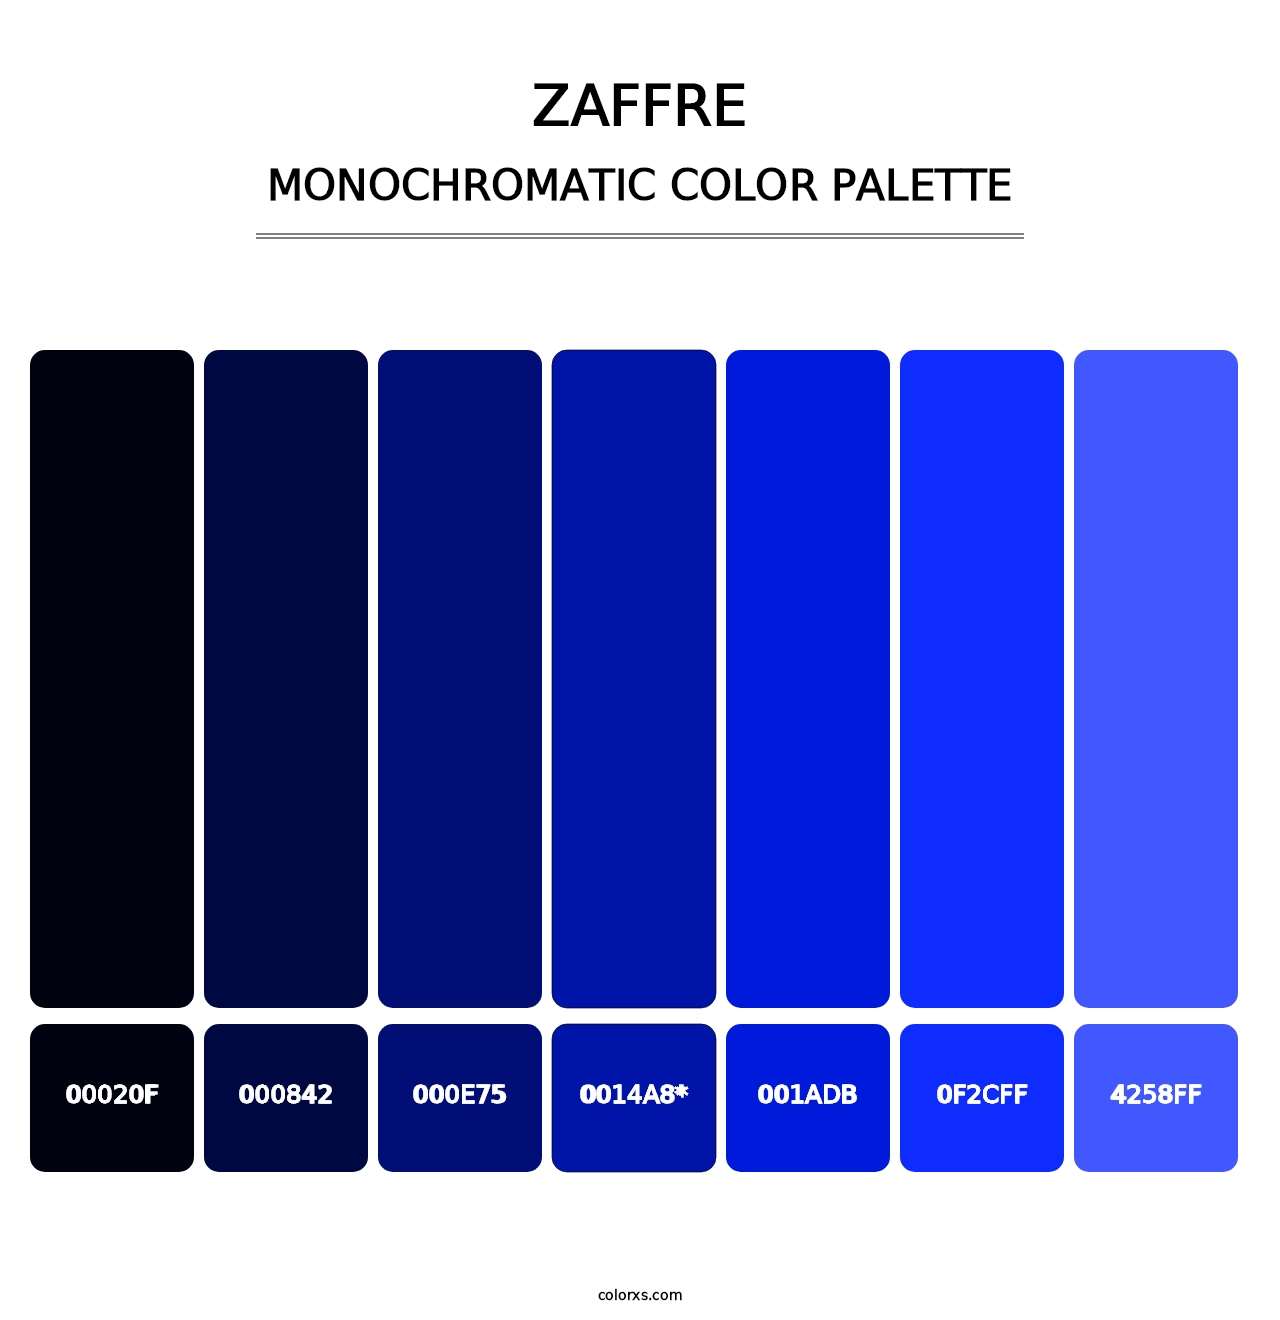 Zaffre - Monochromatic Color Palette